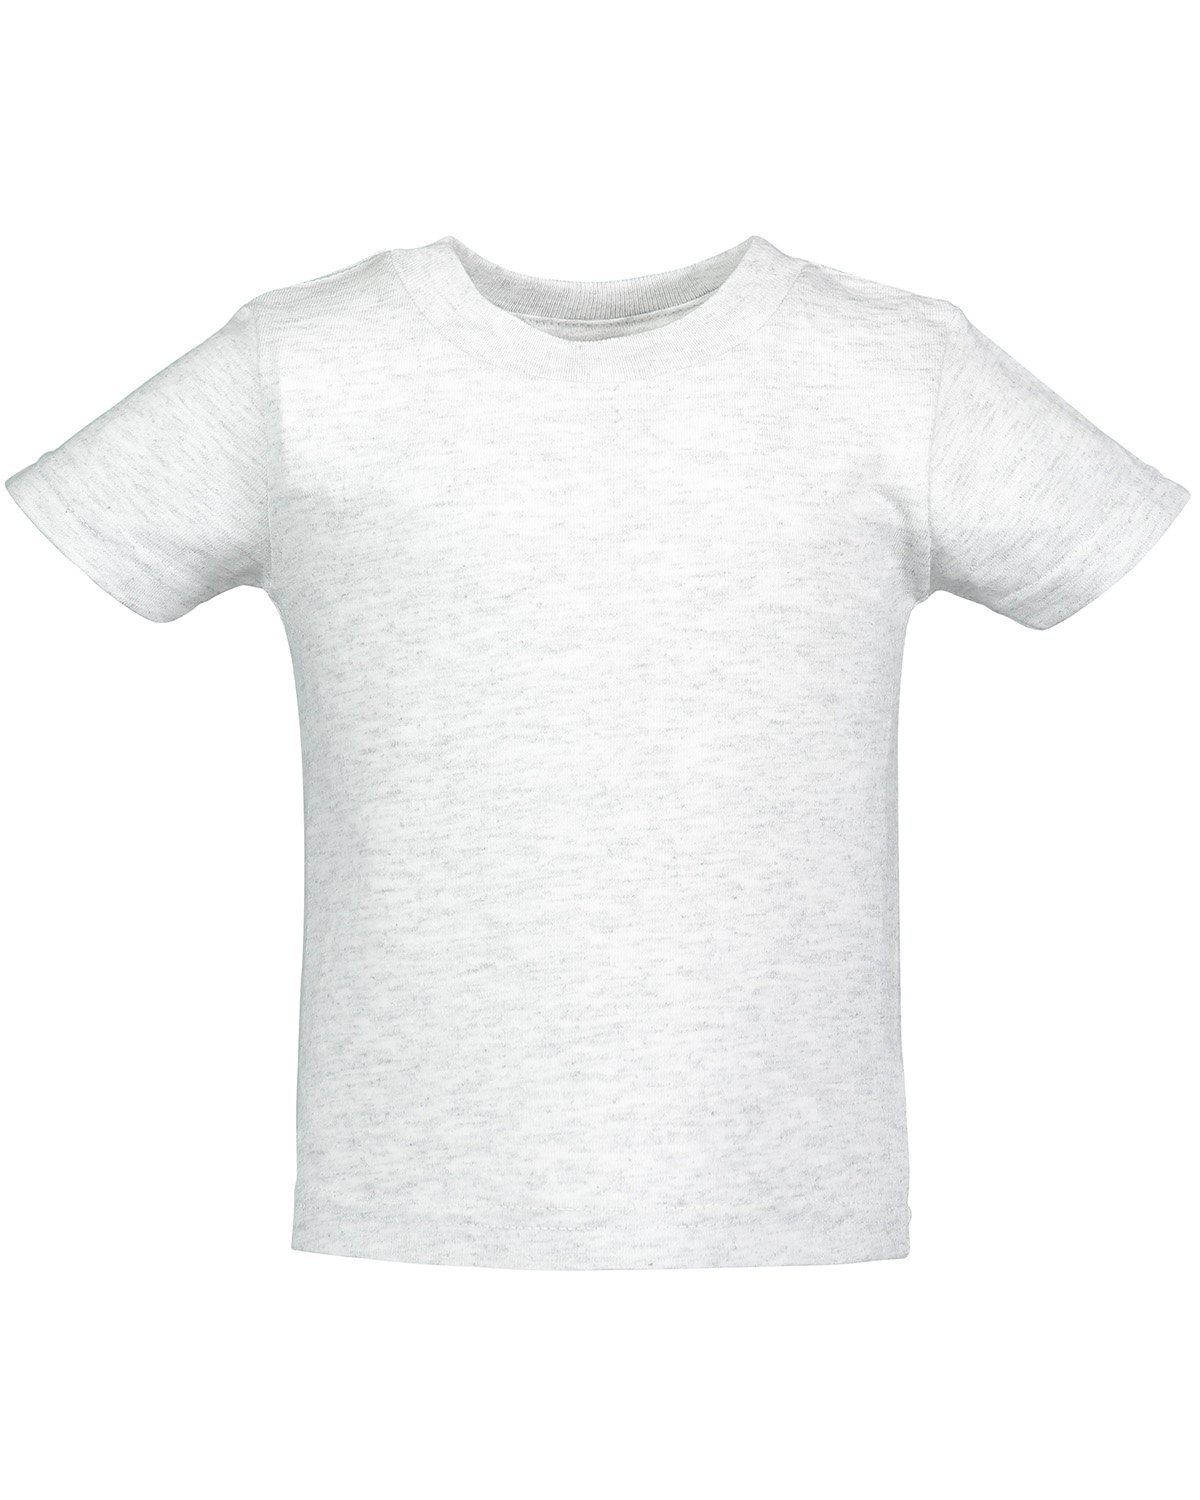 Rabbit Skins Infant Cotton Jersey T-Shirt ash 